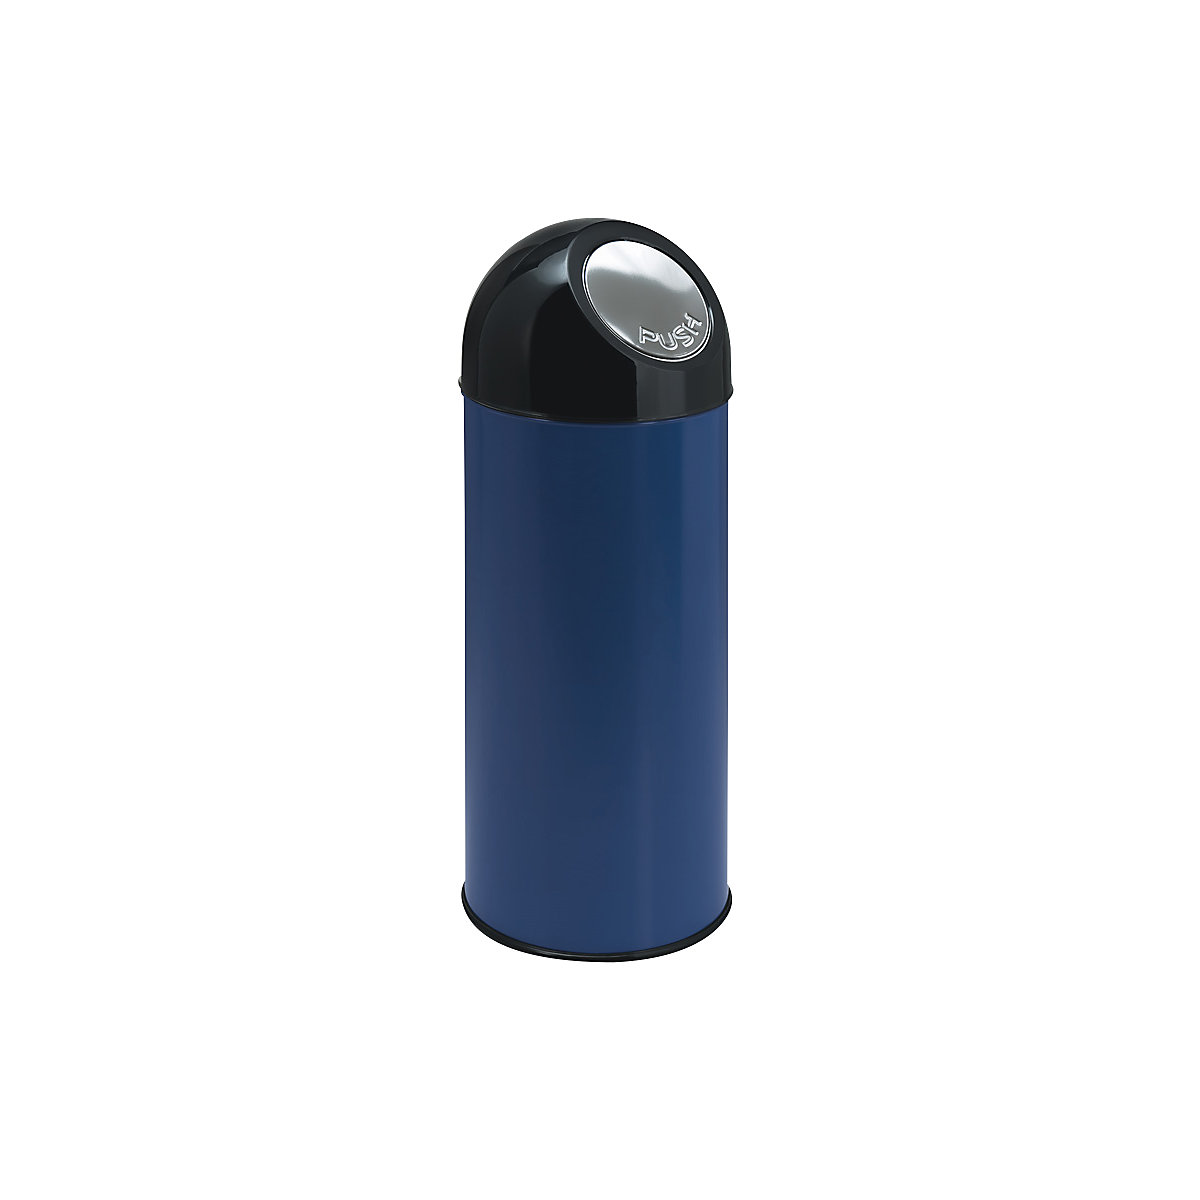 Push-Mülleimer, Volumen 55 l, verzinkter Innenbehälter, blau